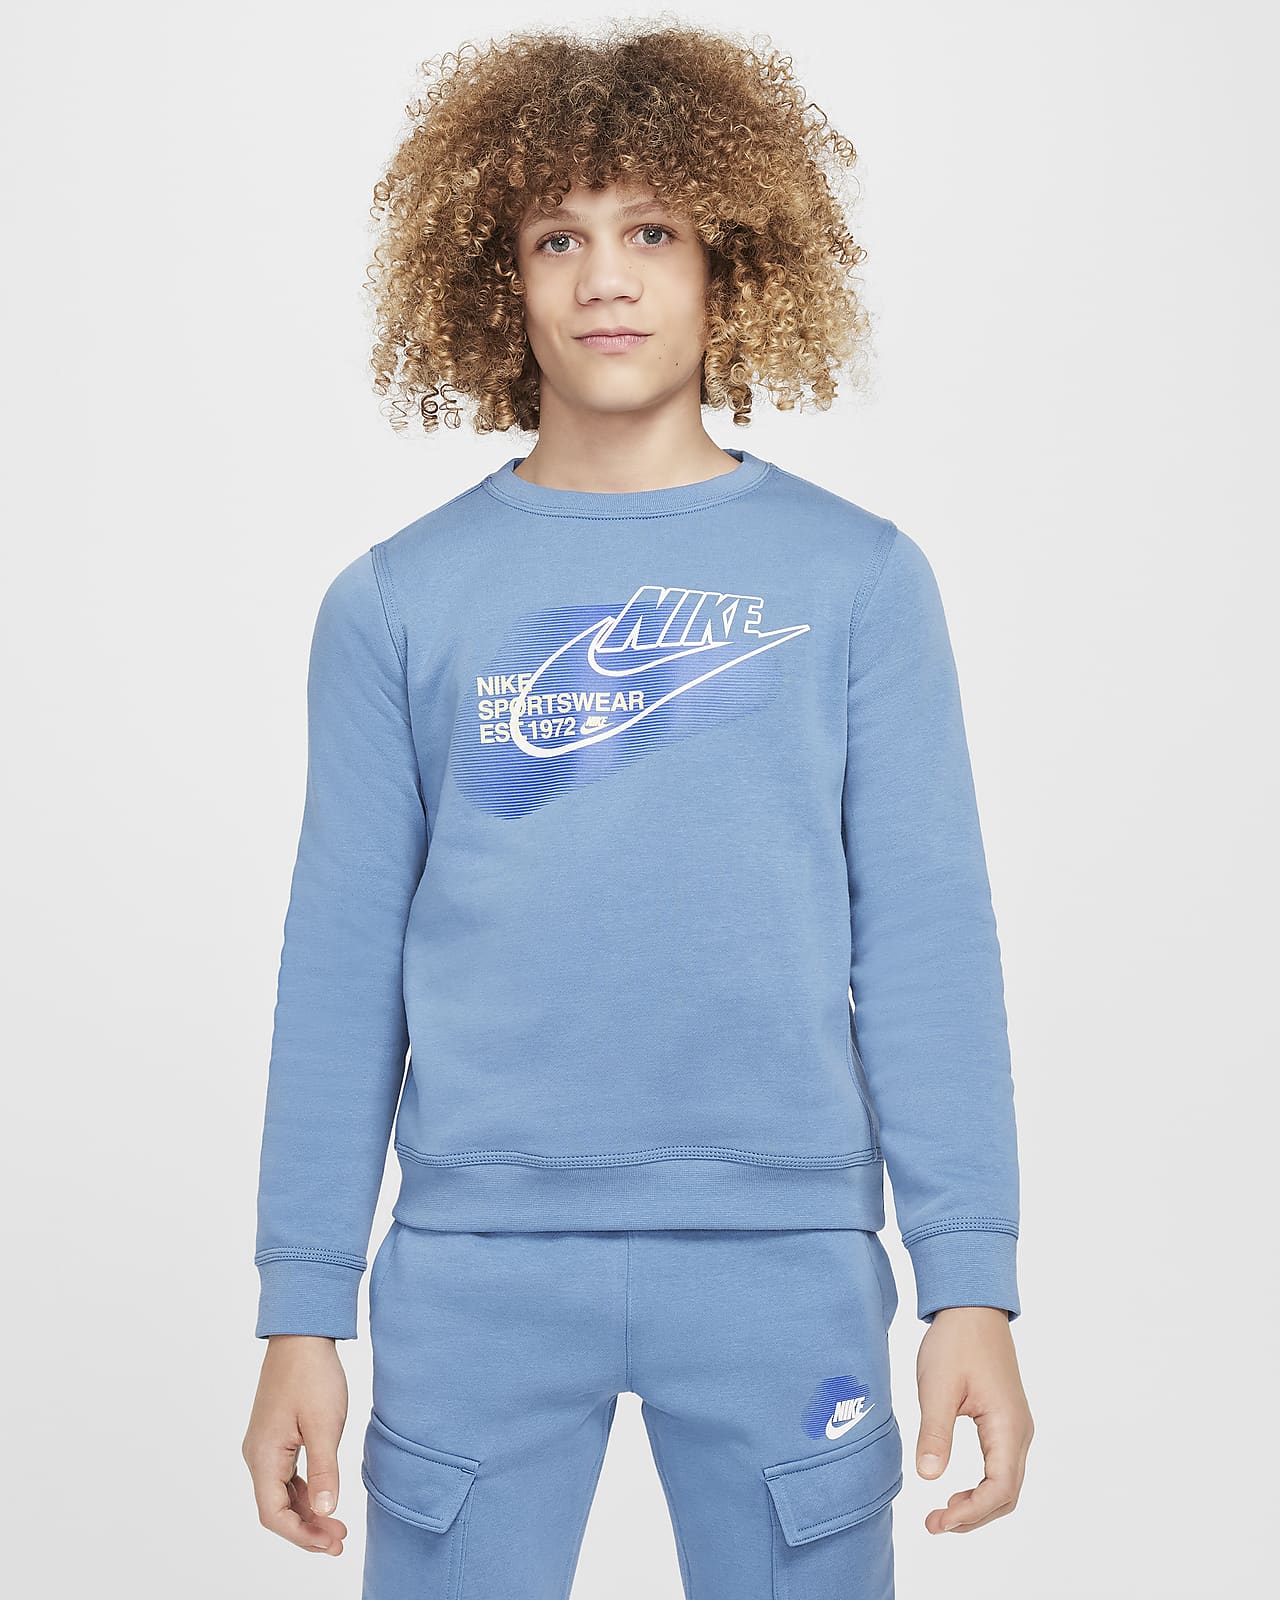 Nike Sportswear Standard Issue Sıfır Yakalı Genç Çocuk (Erkek) Sweatshirt'ü